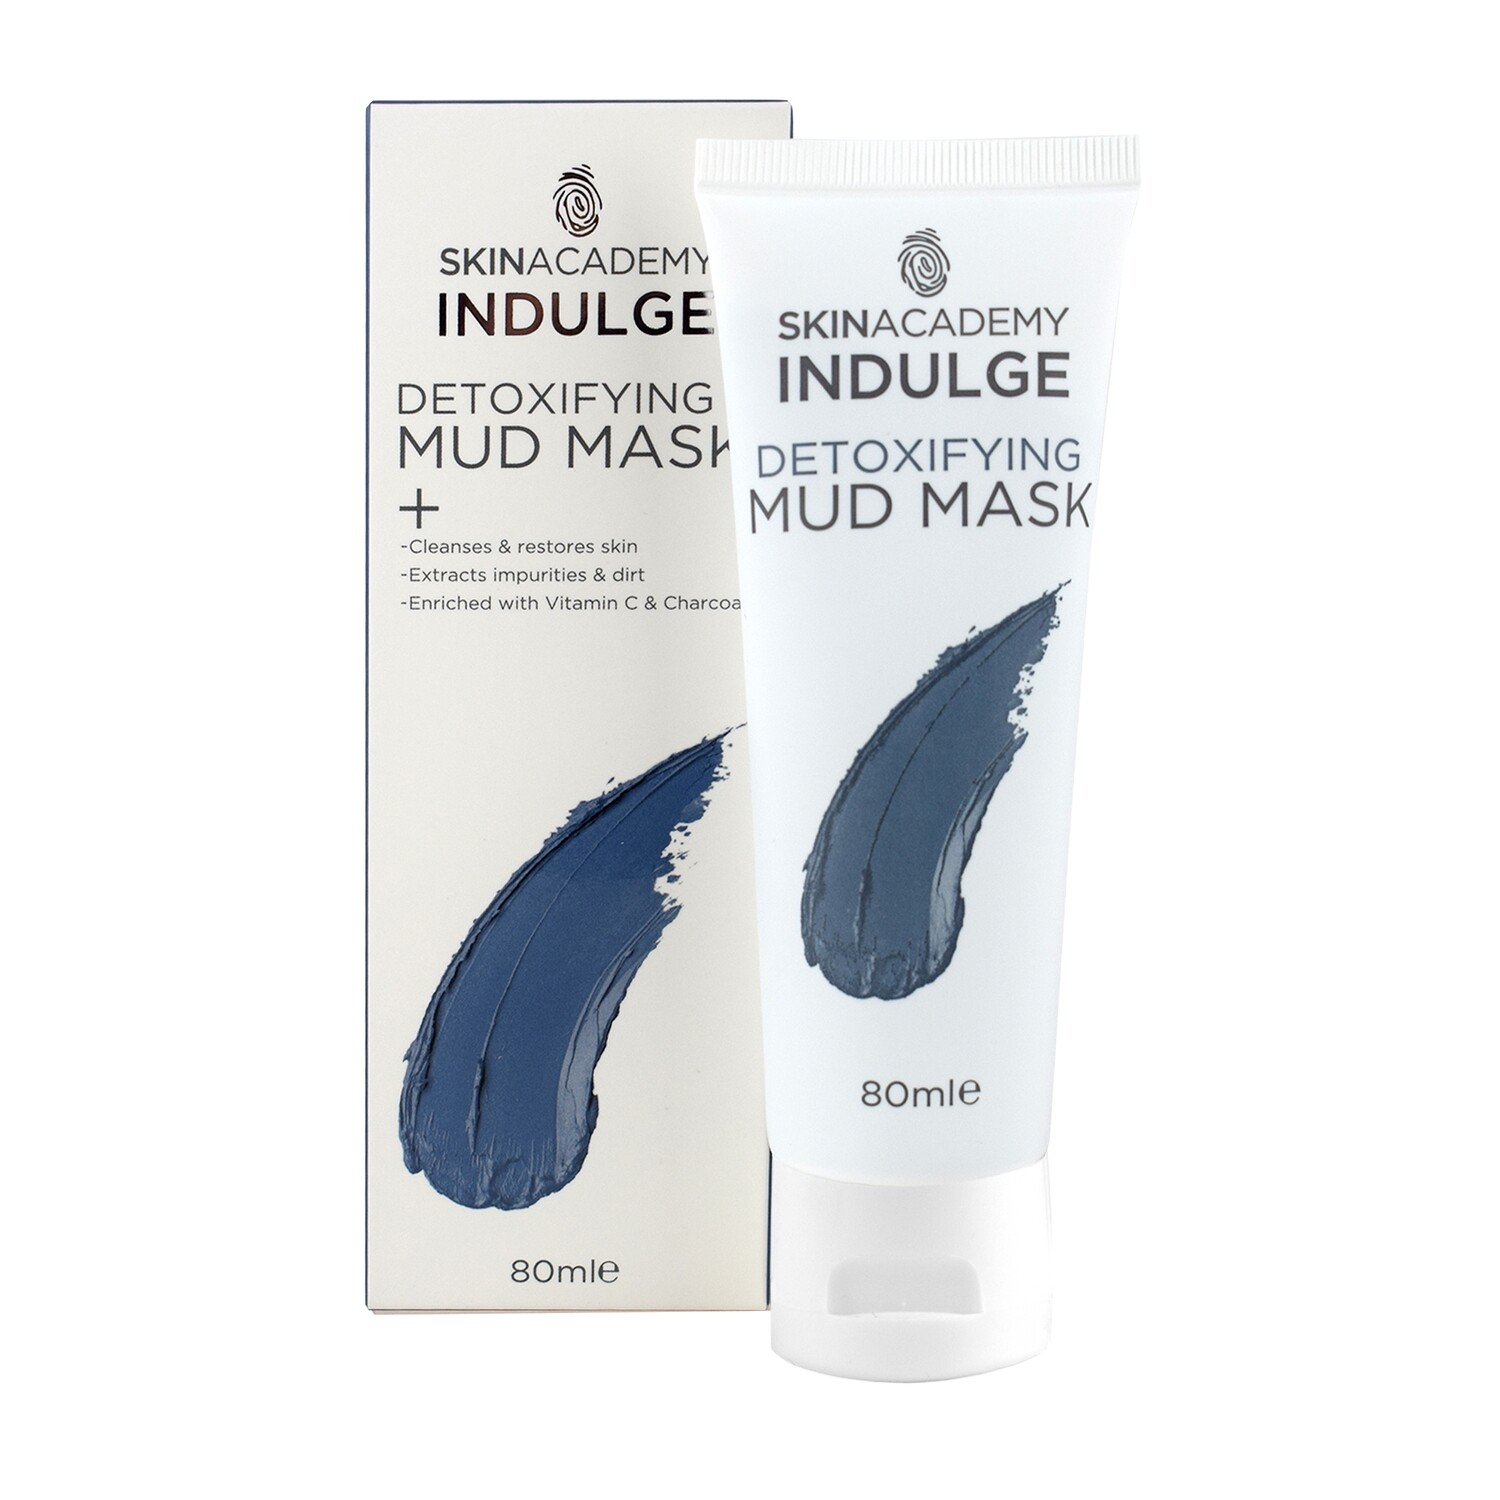 Skin Academy Indulge Mud Mask - Detoxifying, 80ml